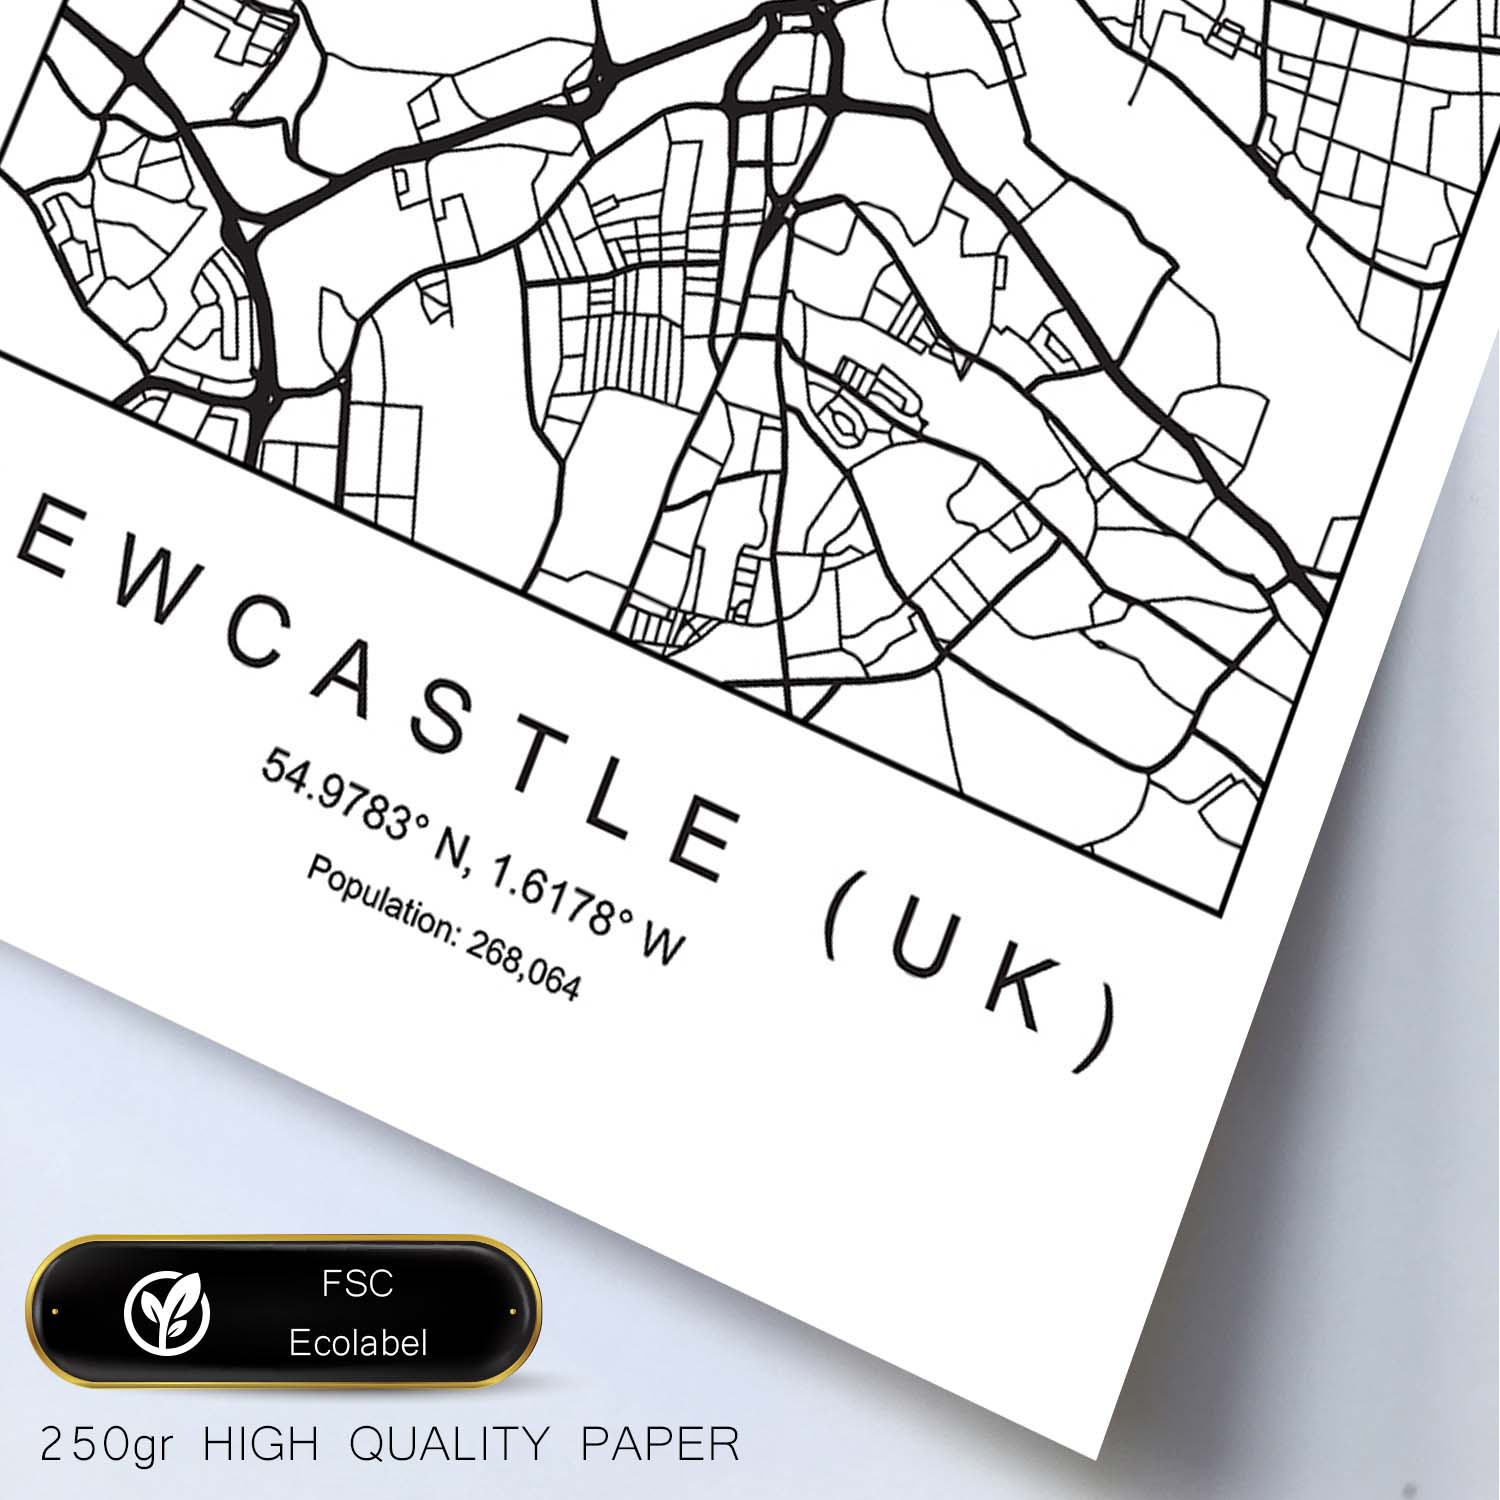 Lámina mapa de la ciudad Newcastle uk estilo nordico en blanco y negro.-Artwork-Nacnic-Nacnic Estudio SL